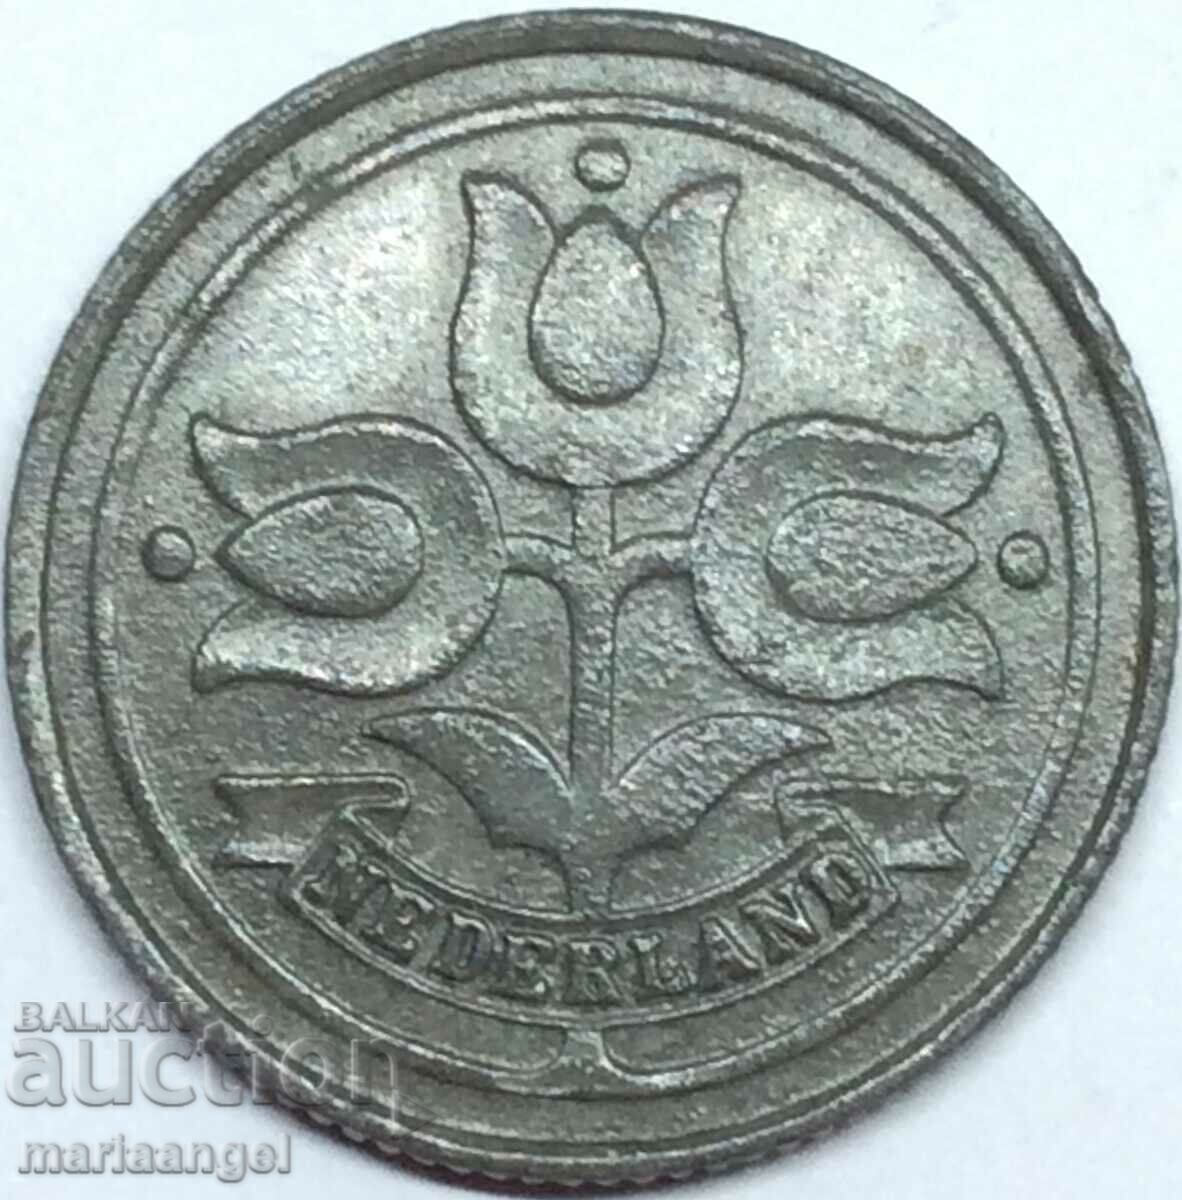 Netherlands 10 cents 1941 zinc - quite rare